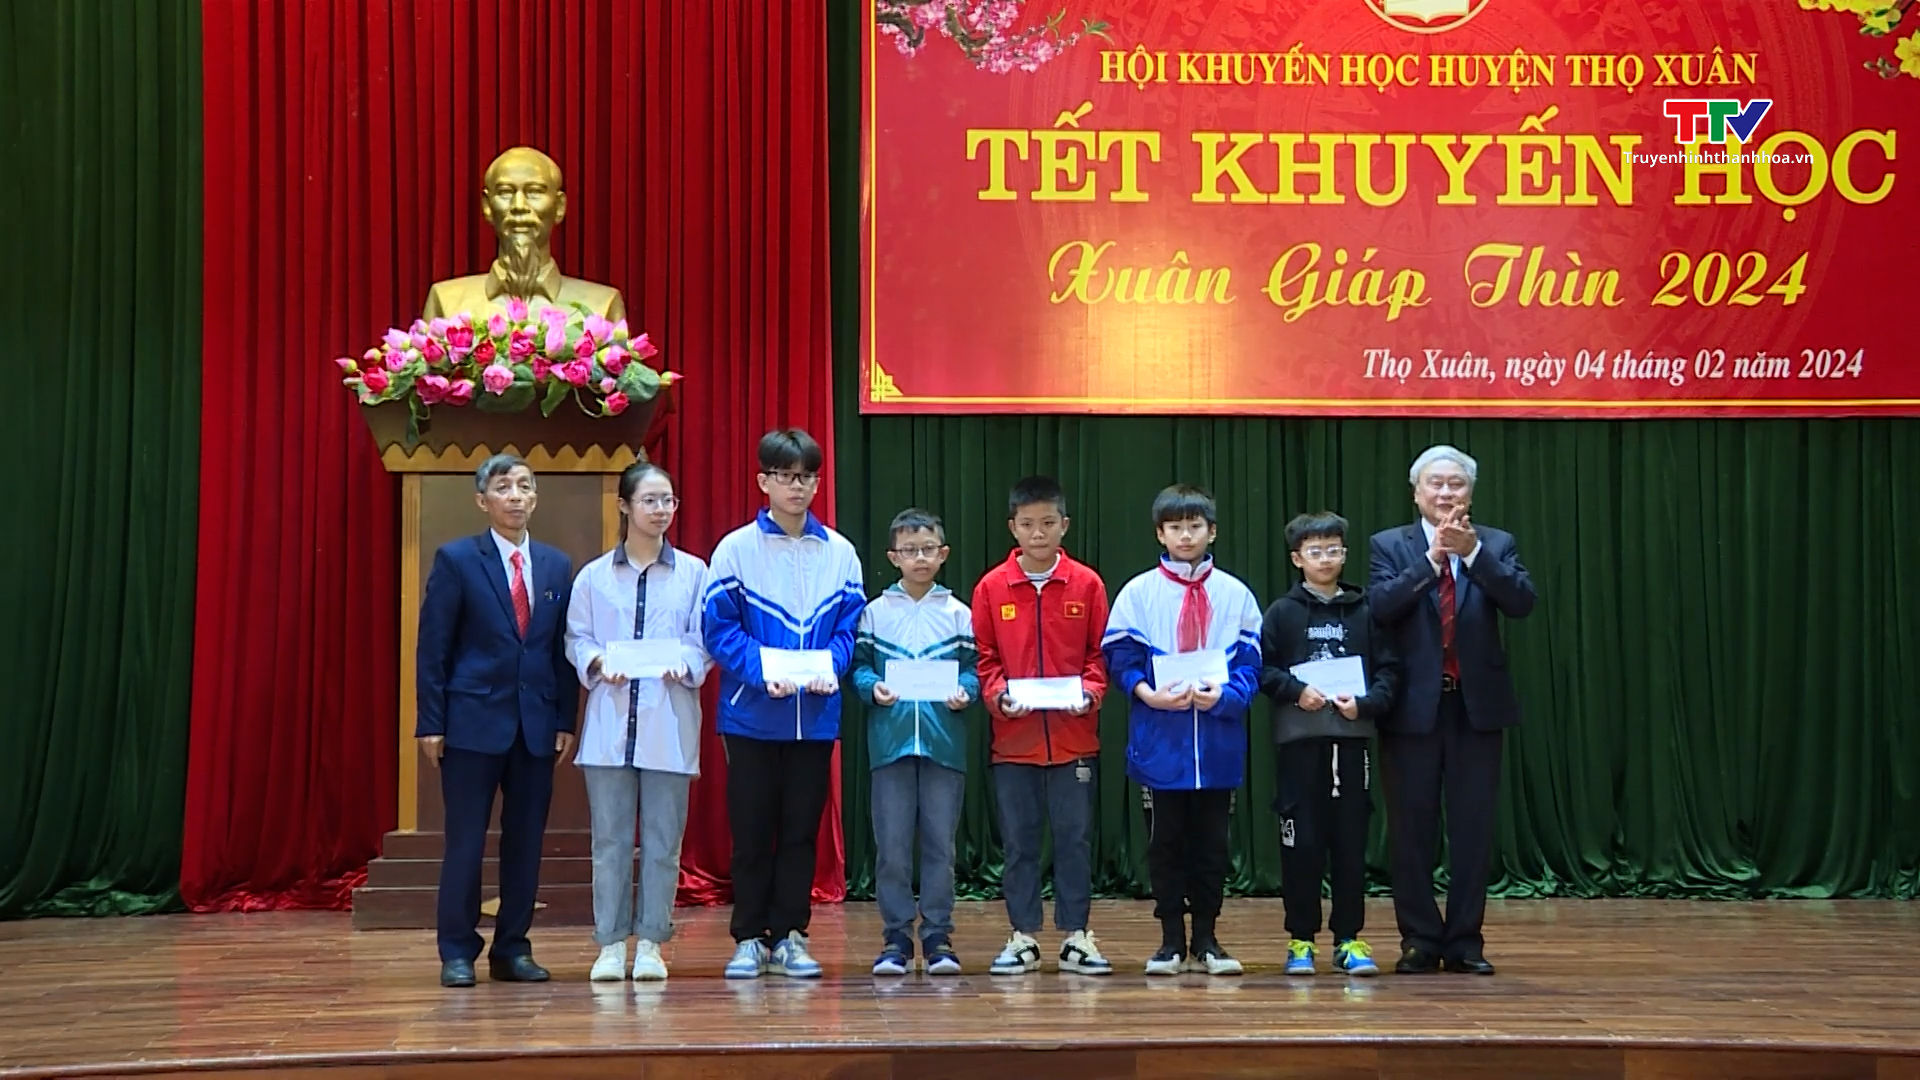 Hội khuyến học huyện Thọ Xuân tổ chức Tết khuyến học Xuân Giáp Thìn 2024- Ảnh 1.